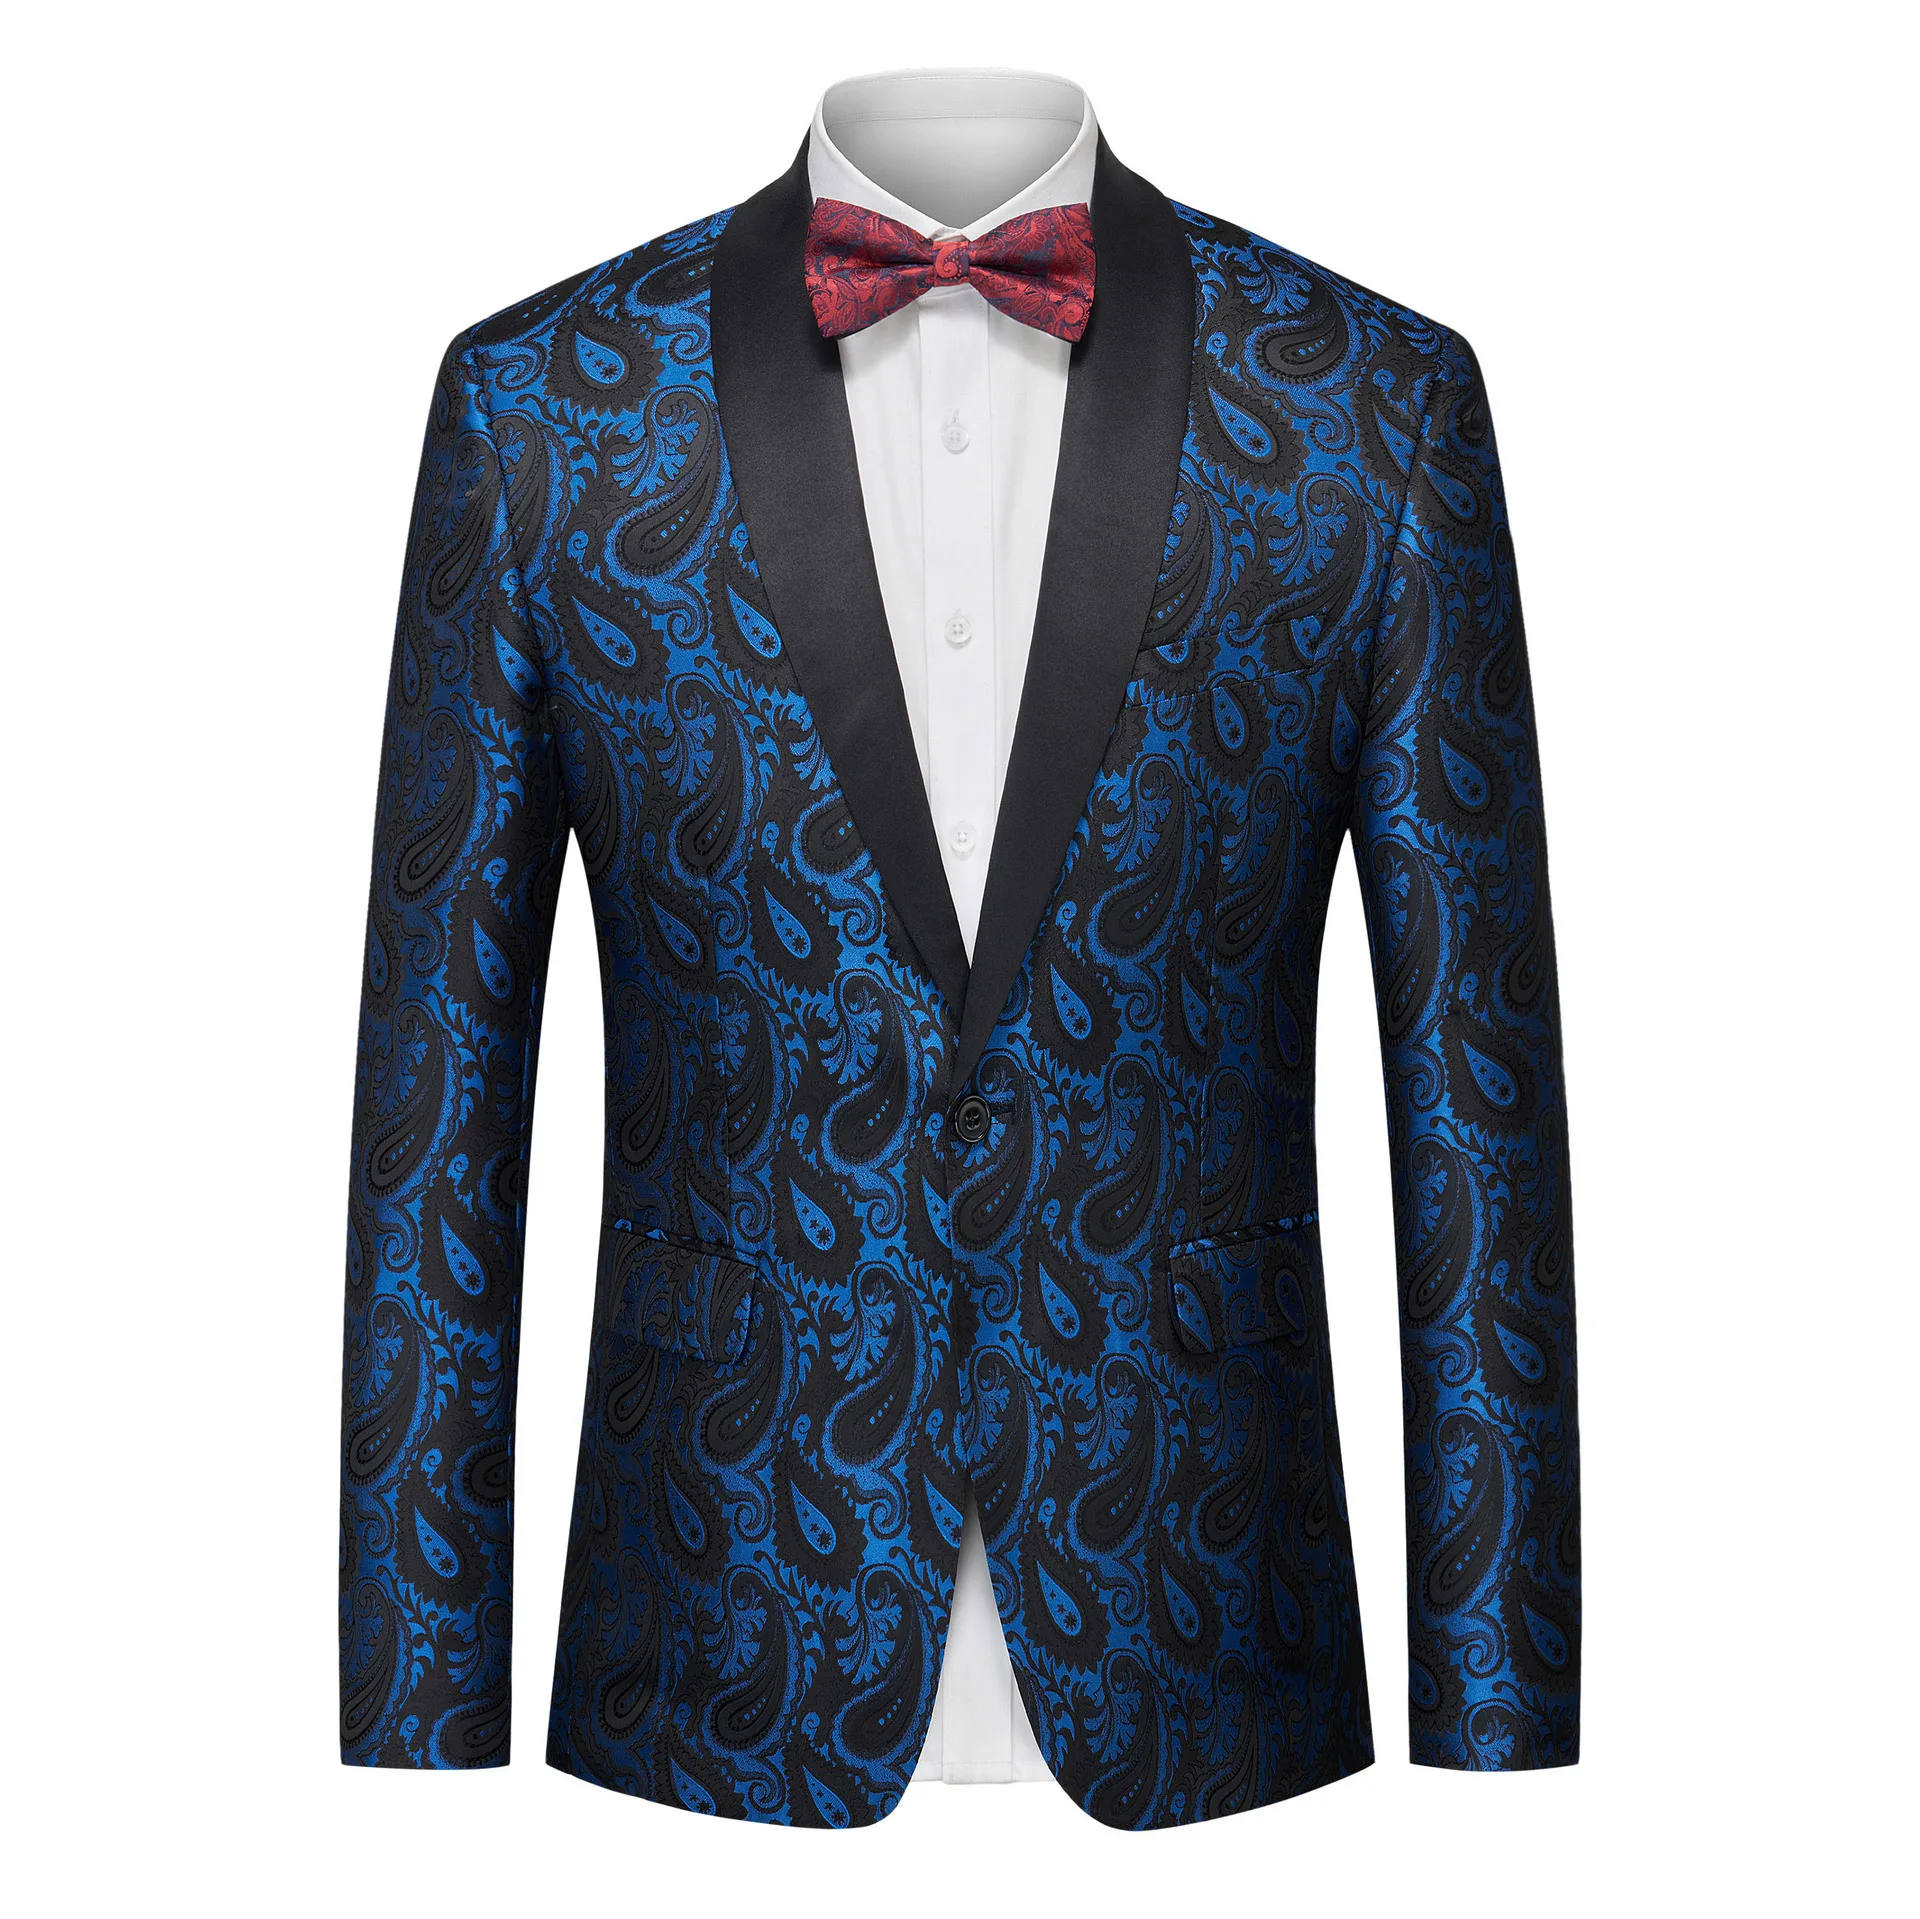 

J116 Men's Jacquard Tuxedo Fashion Suit Jacket Single West Multicolor Slim Fit Stage Performance Wedding Banquet